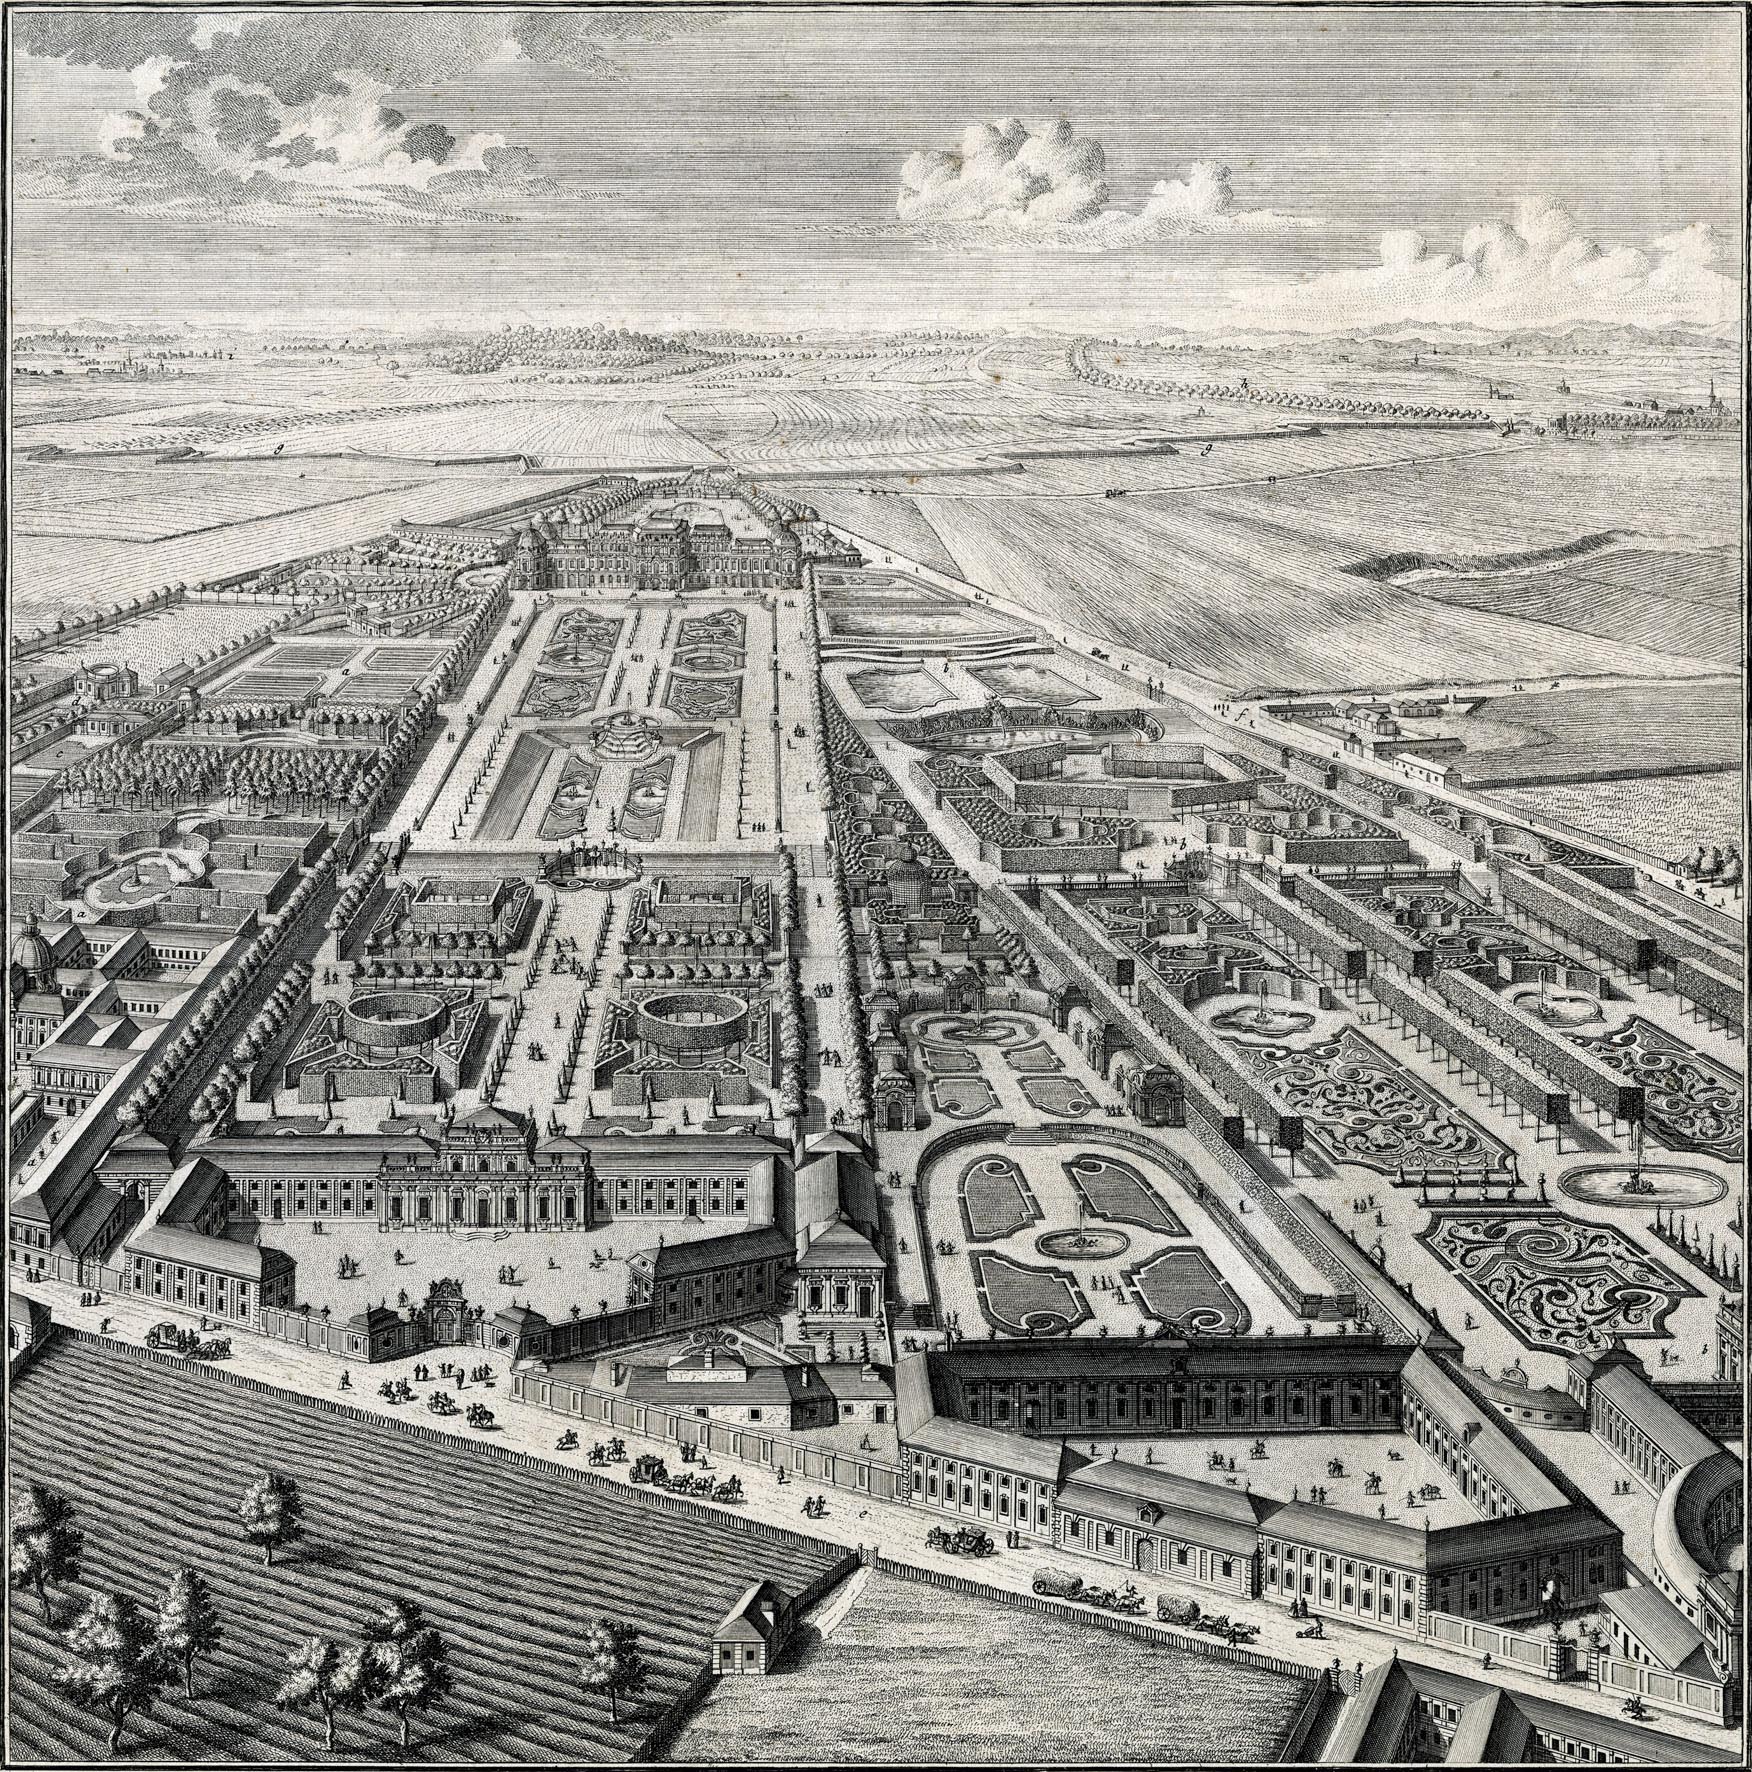 Imagen histórica del Belvedere en 1731